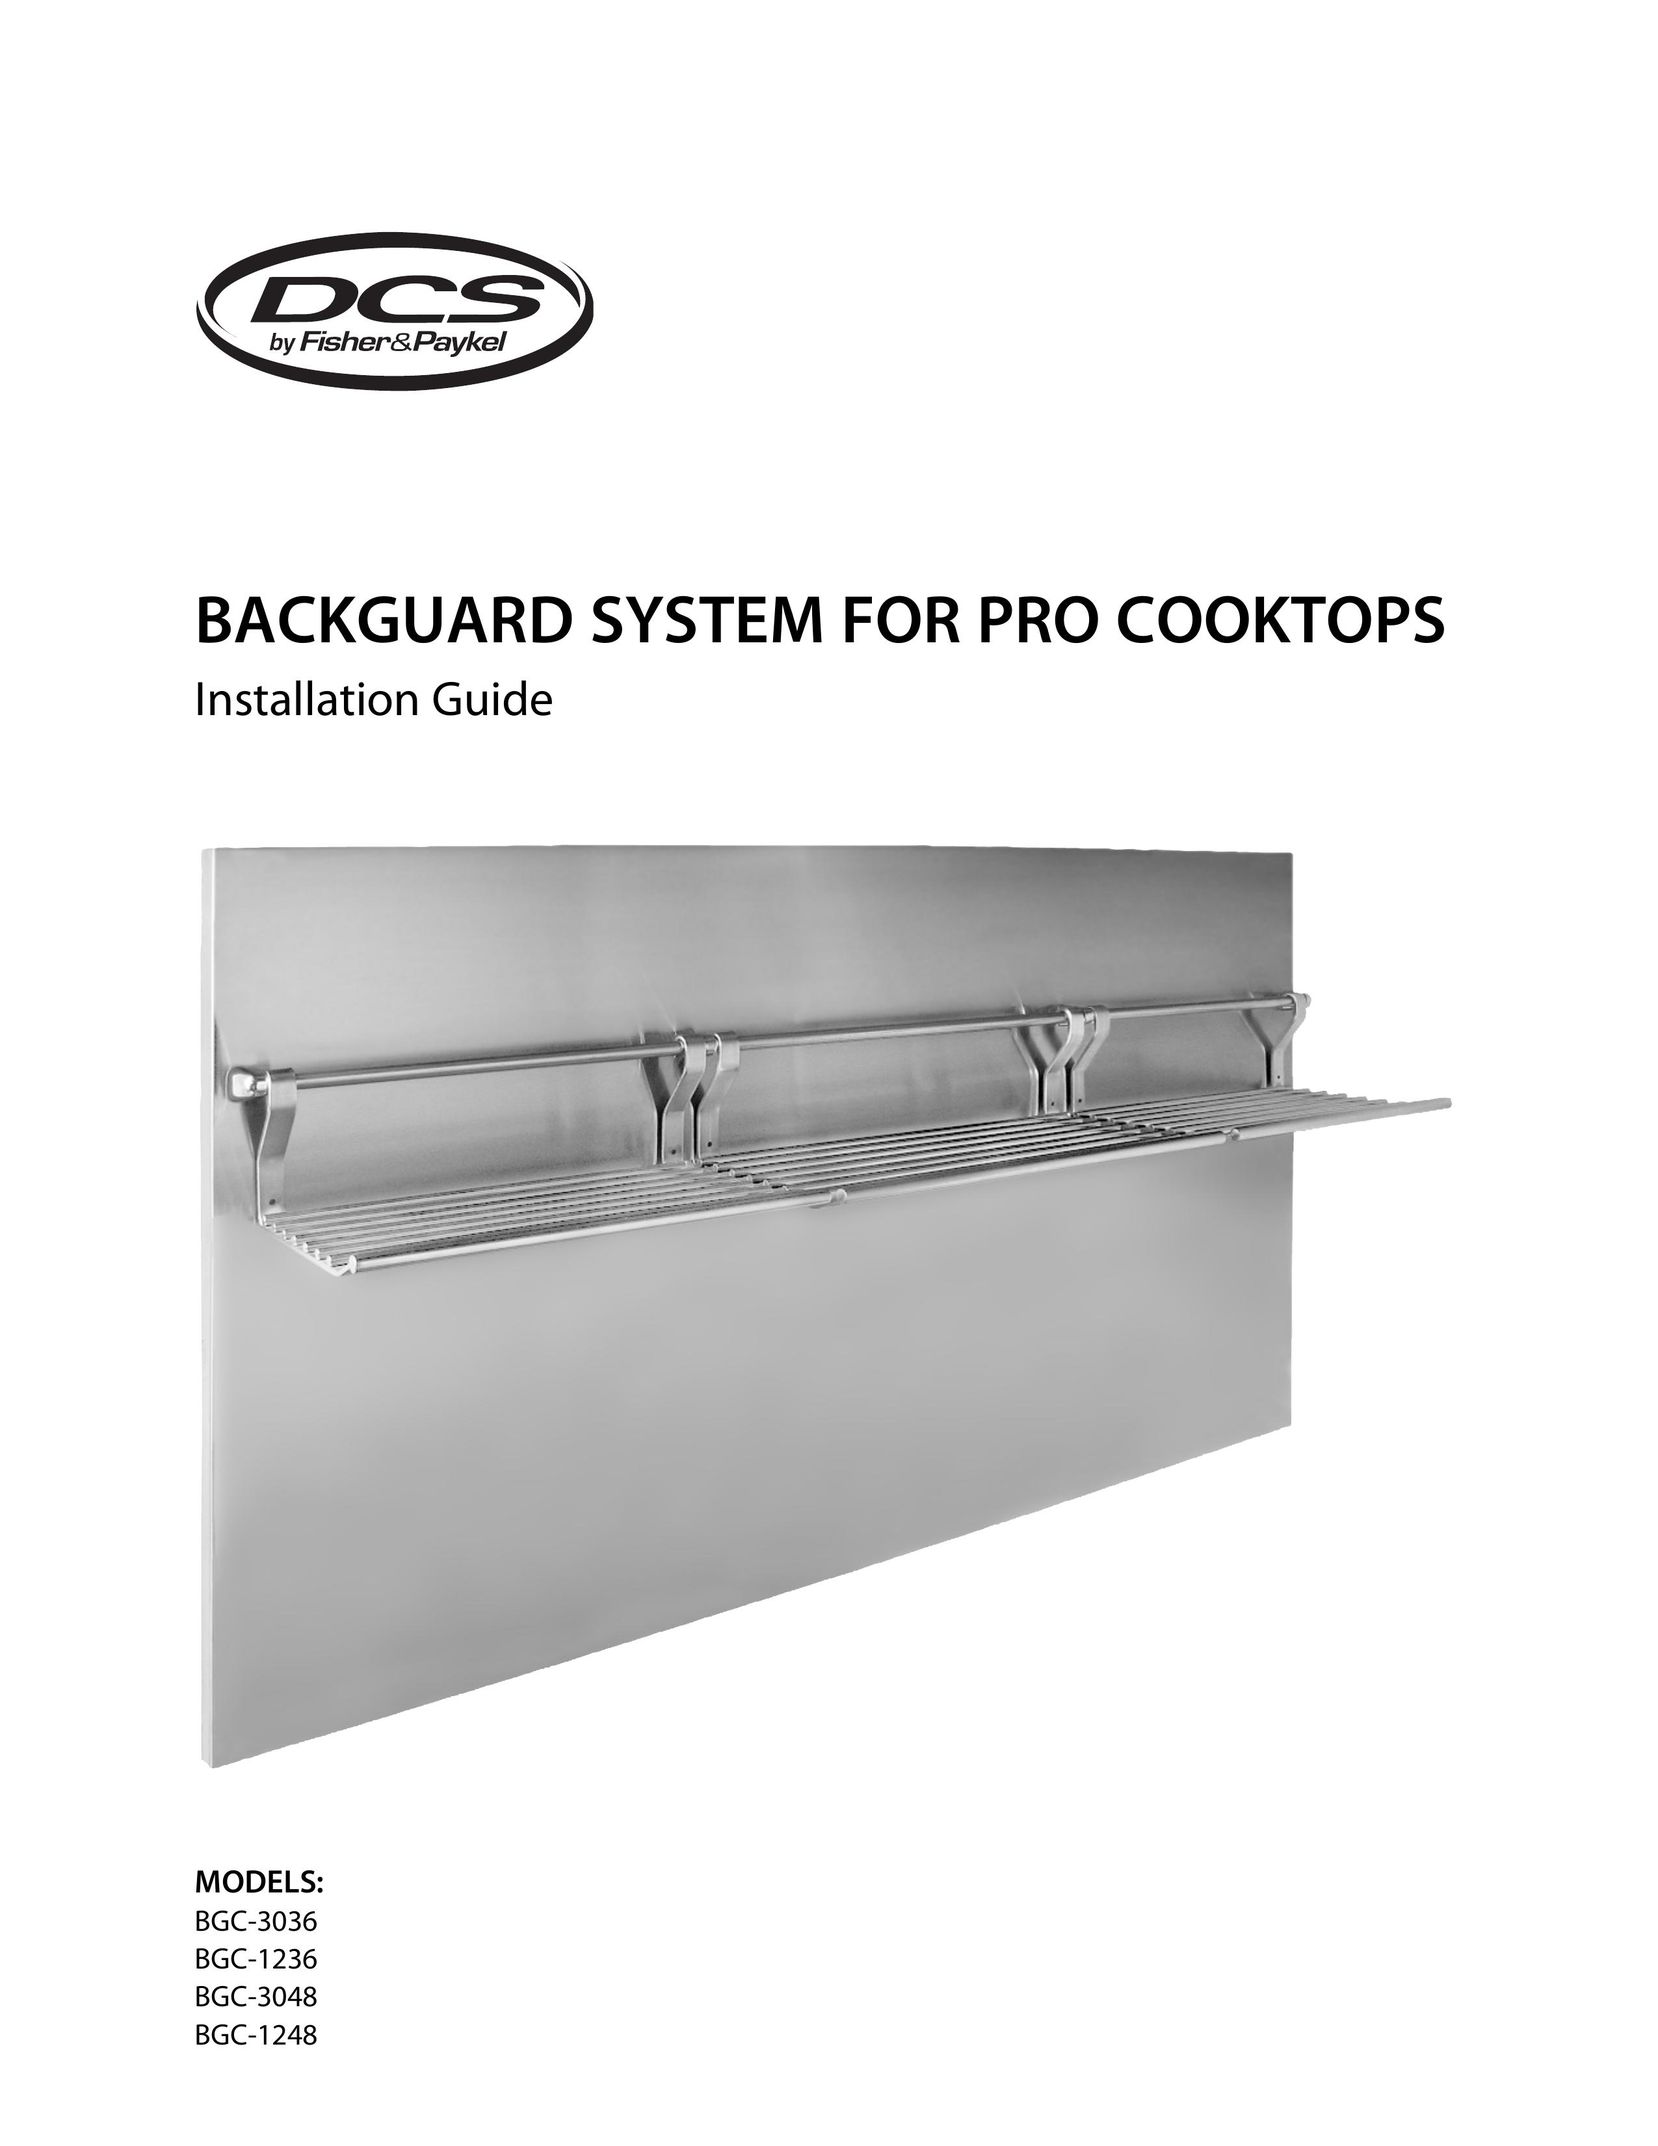 DCS BGC-1248 Cooktop User Manual